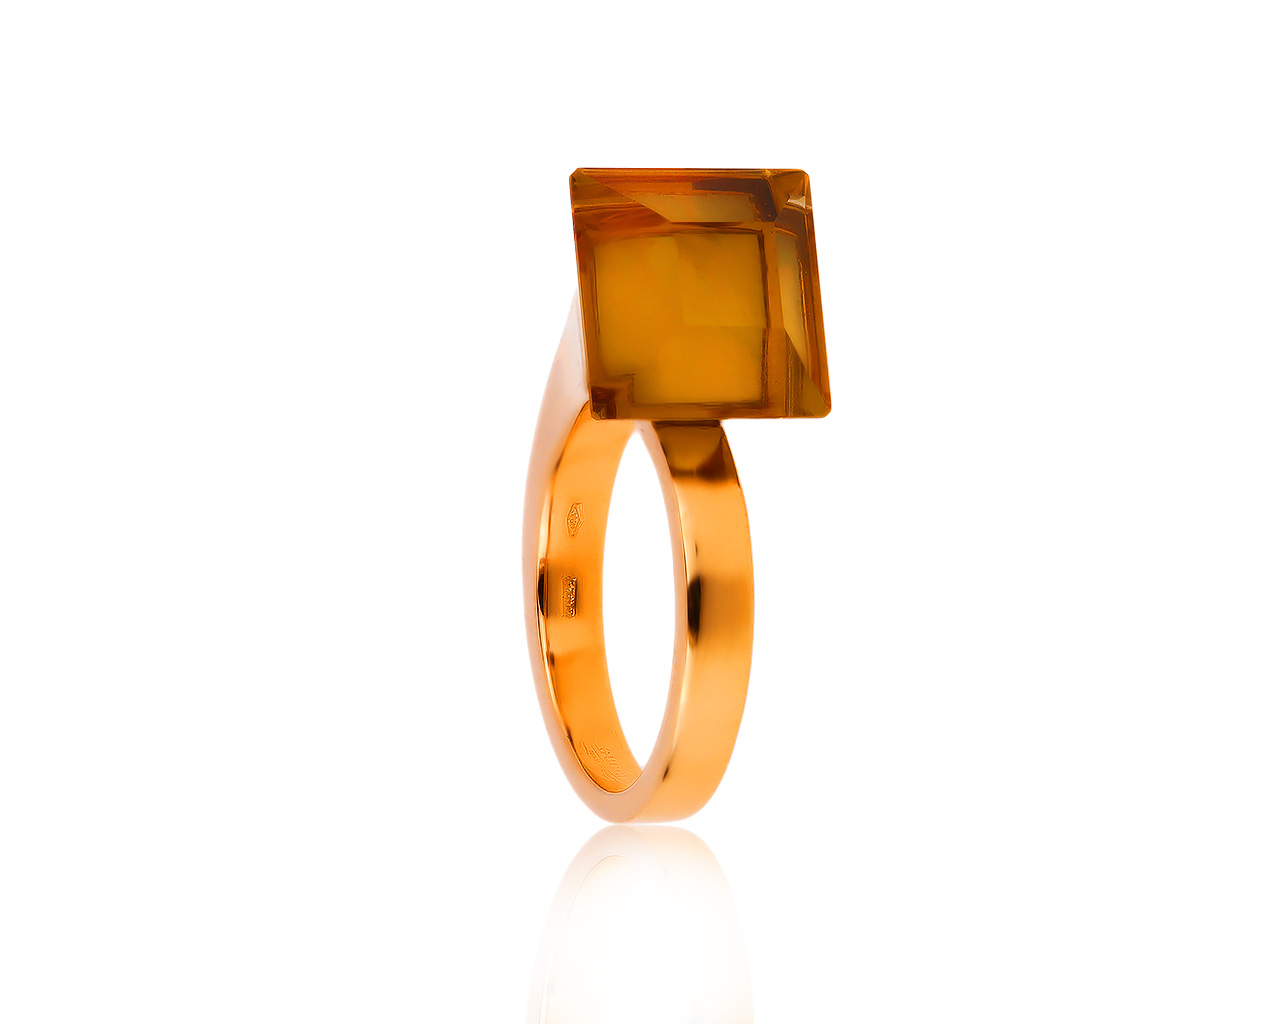 Оригинальное золотое кольцо с цитрином 10.01ct Gucci